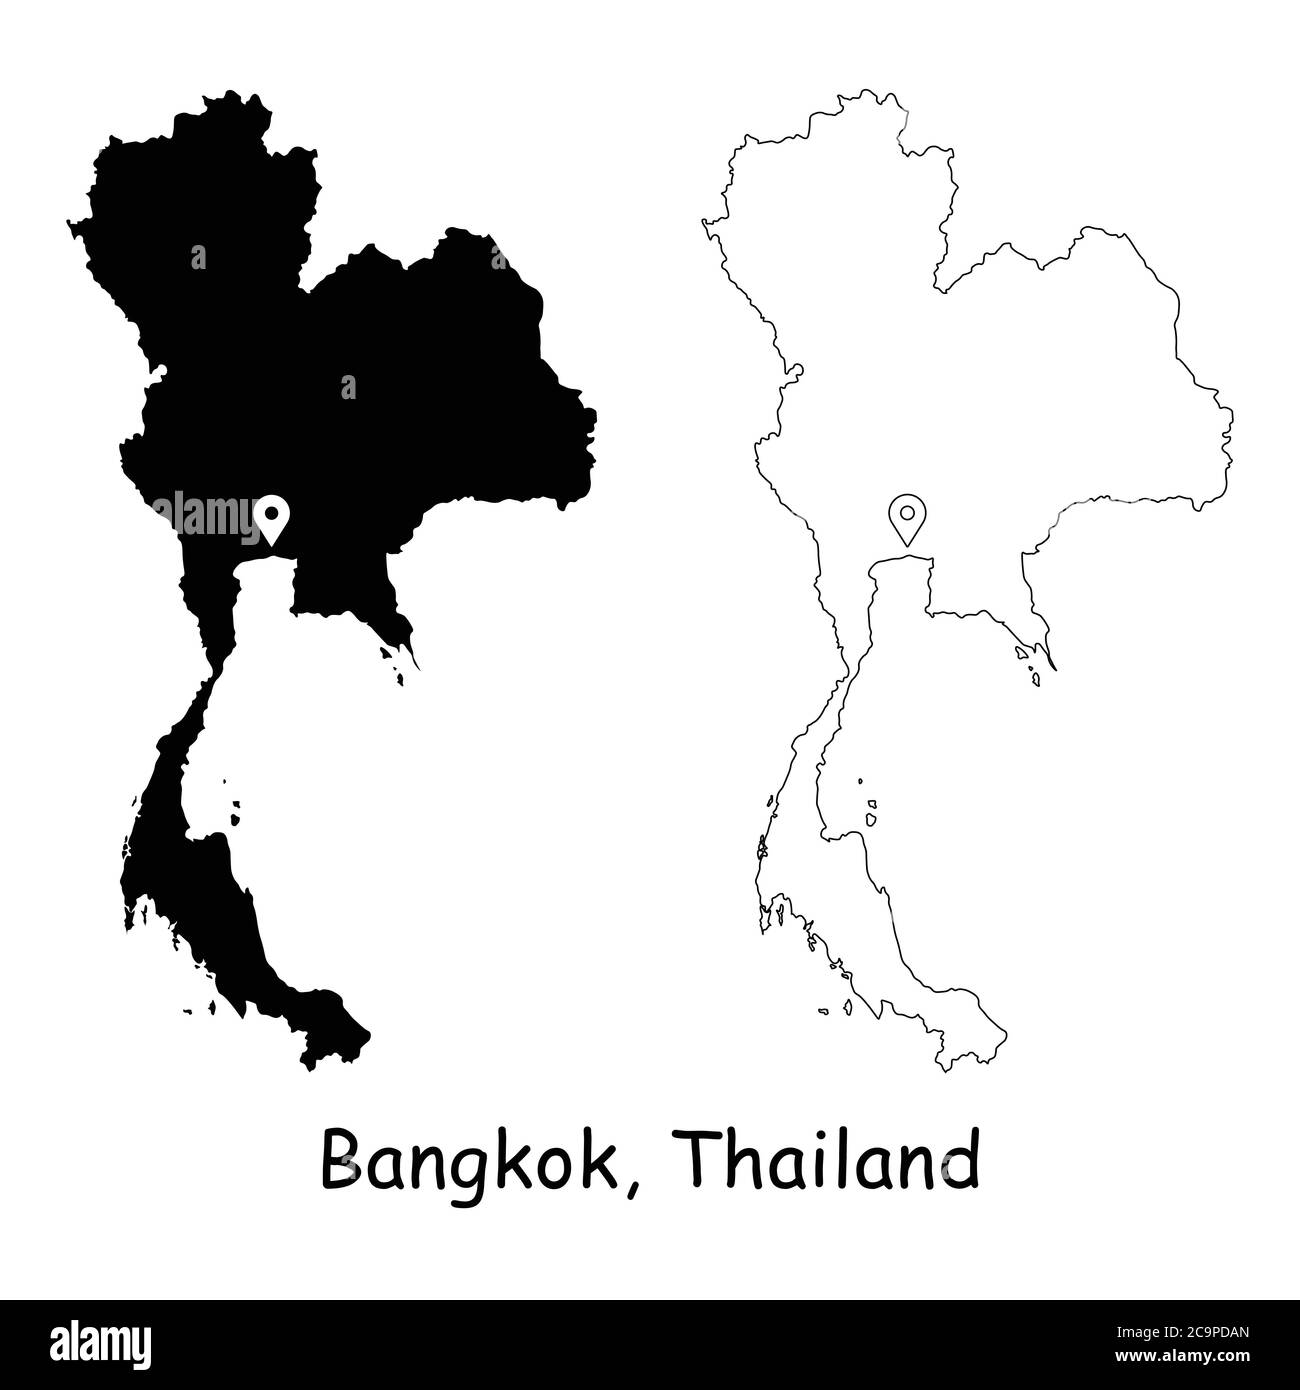 Bangkok, Thailandia. Mappa dettagliata del Paese con il pin della posizione sulla città capitale. Silhouette nera e mappe di contorno isolate su sfondo bianco. Vettore EPS Illustrazione Vettoriale